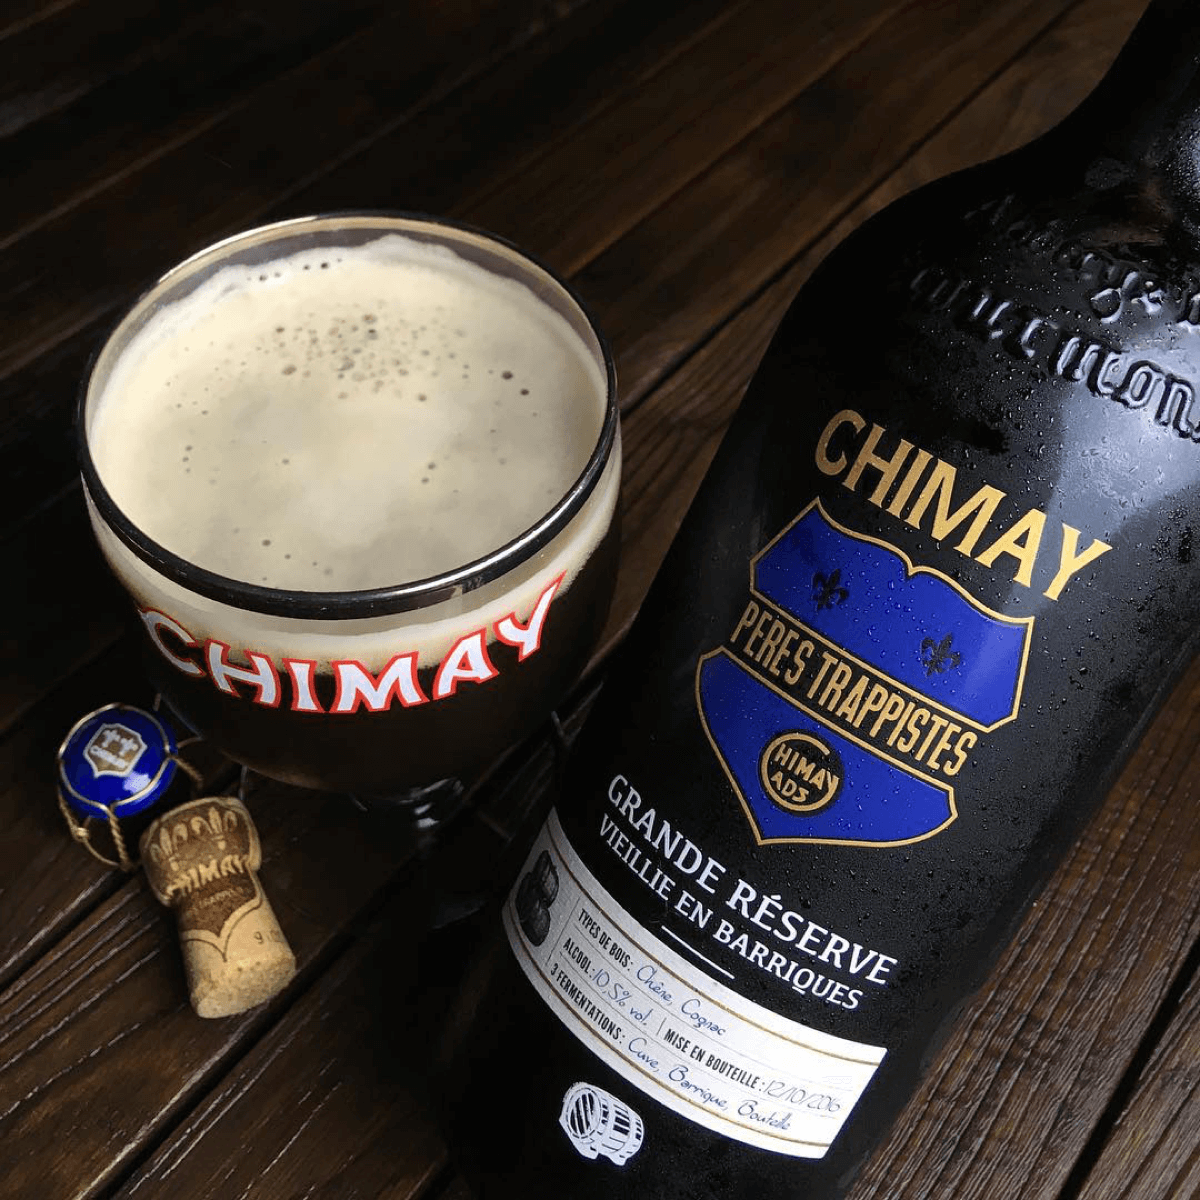 La Chimay Bleue peut aussi se déguster en grande bouteille, veillie en cave dans de vieilles barriques